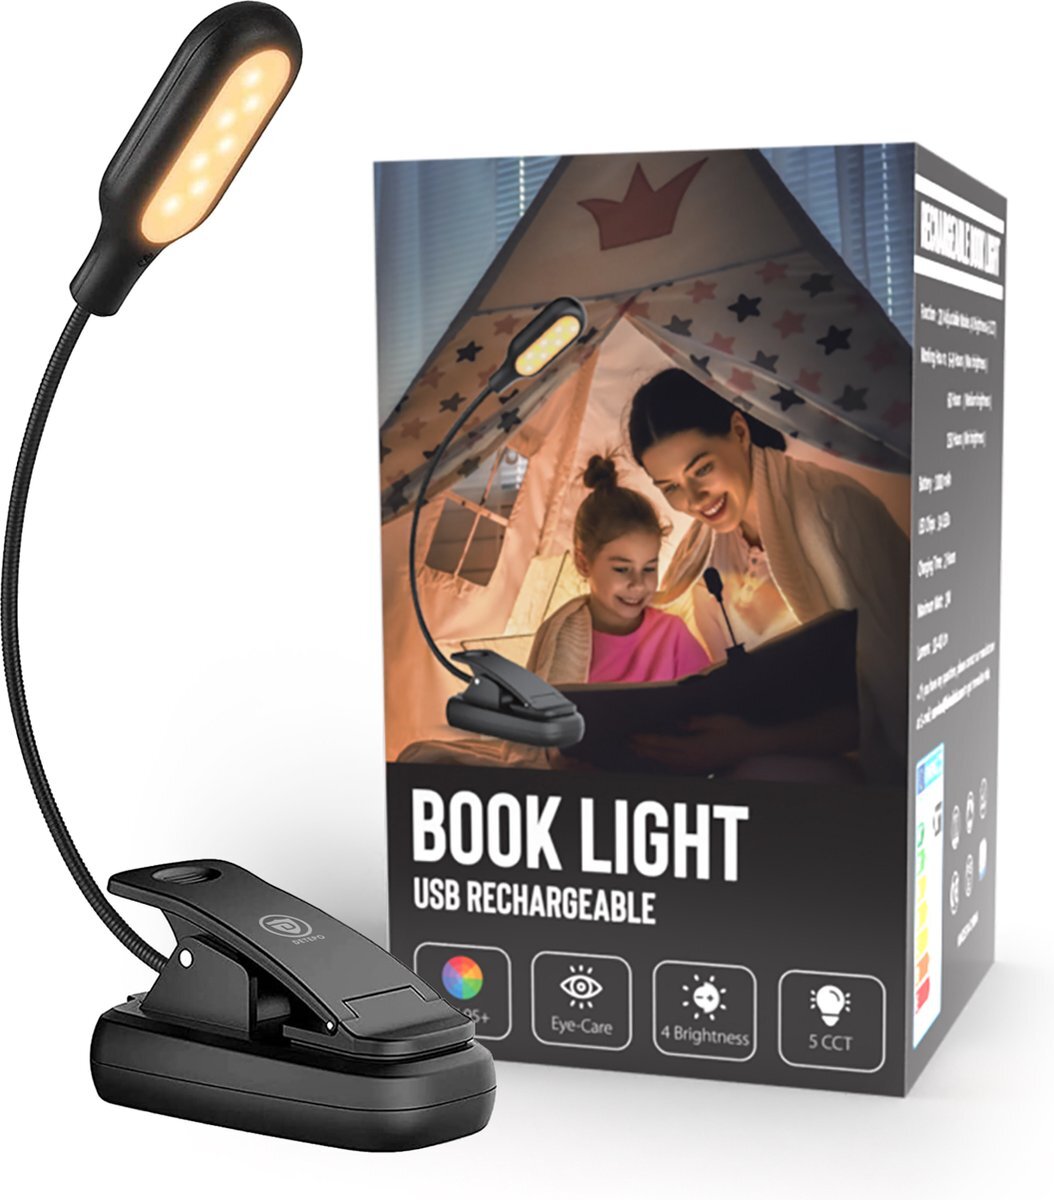 Detepo Leeslampje voor Boek - Draadloos - USB Oplaadbaar - LED Boeklamp met Klem - Verstelbaar - Leeslamp met Flexibele Arm Geschikt voor Boeken/Slaapkamer/Bed - Zwart kopen? | | helpt je kiezen